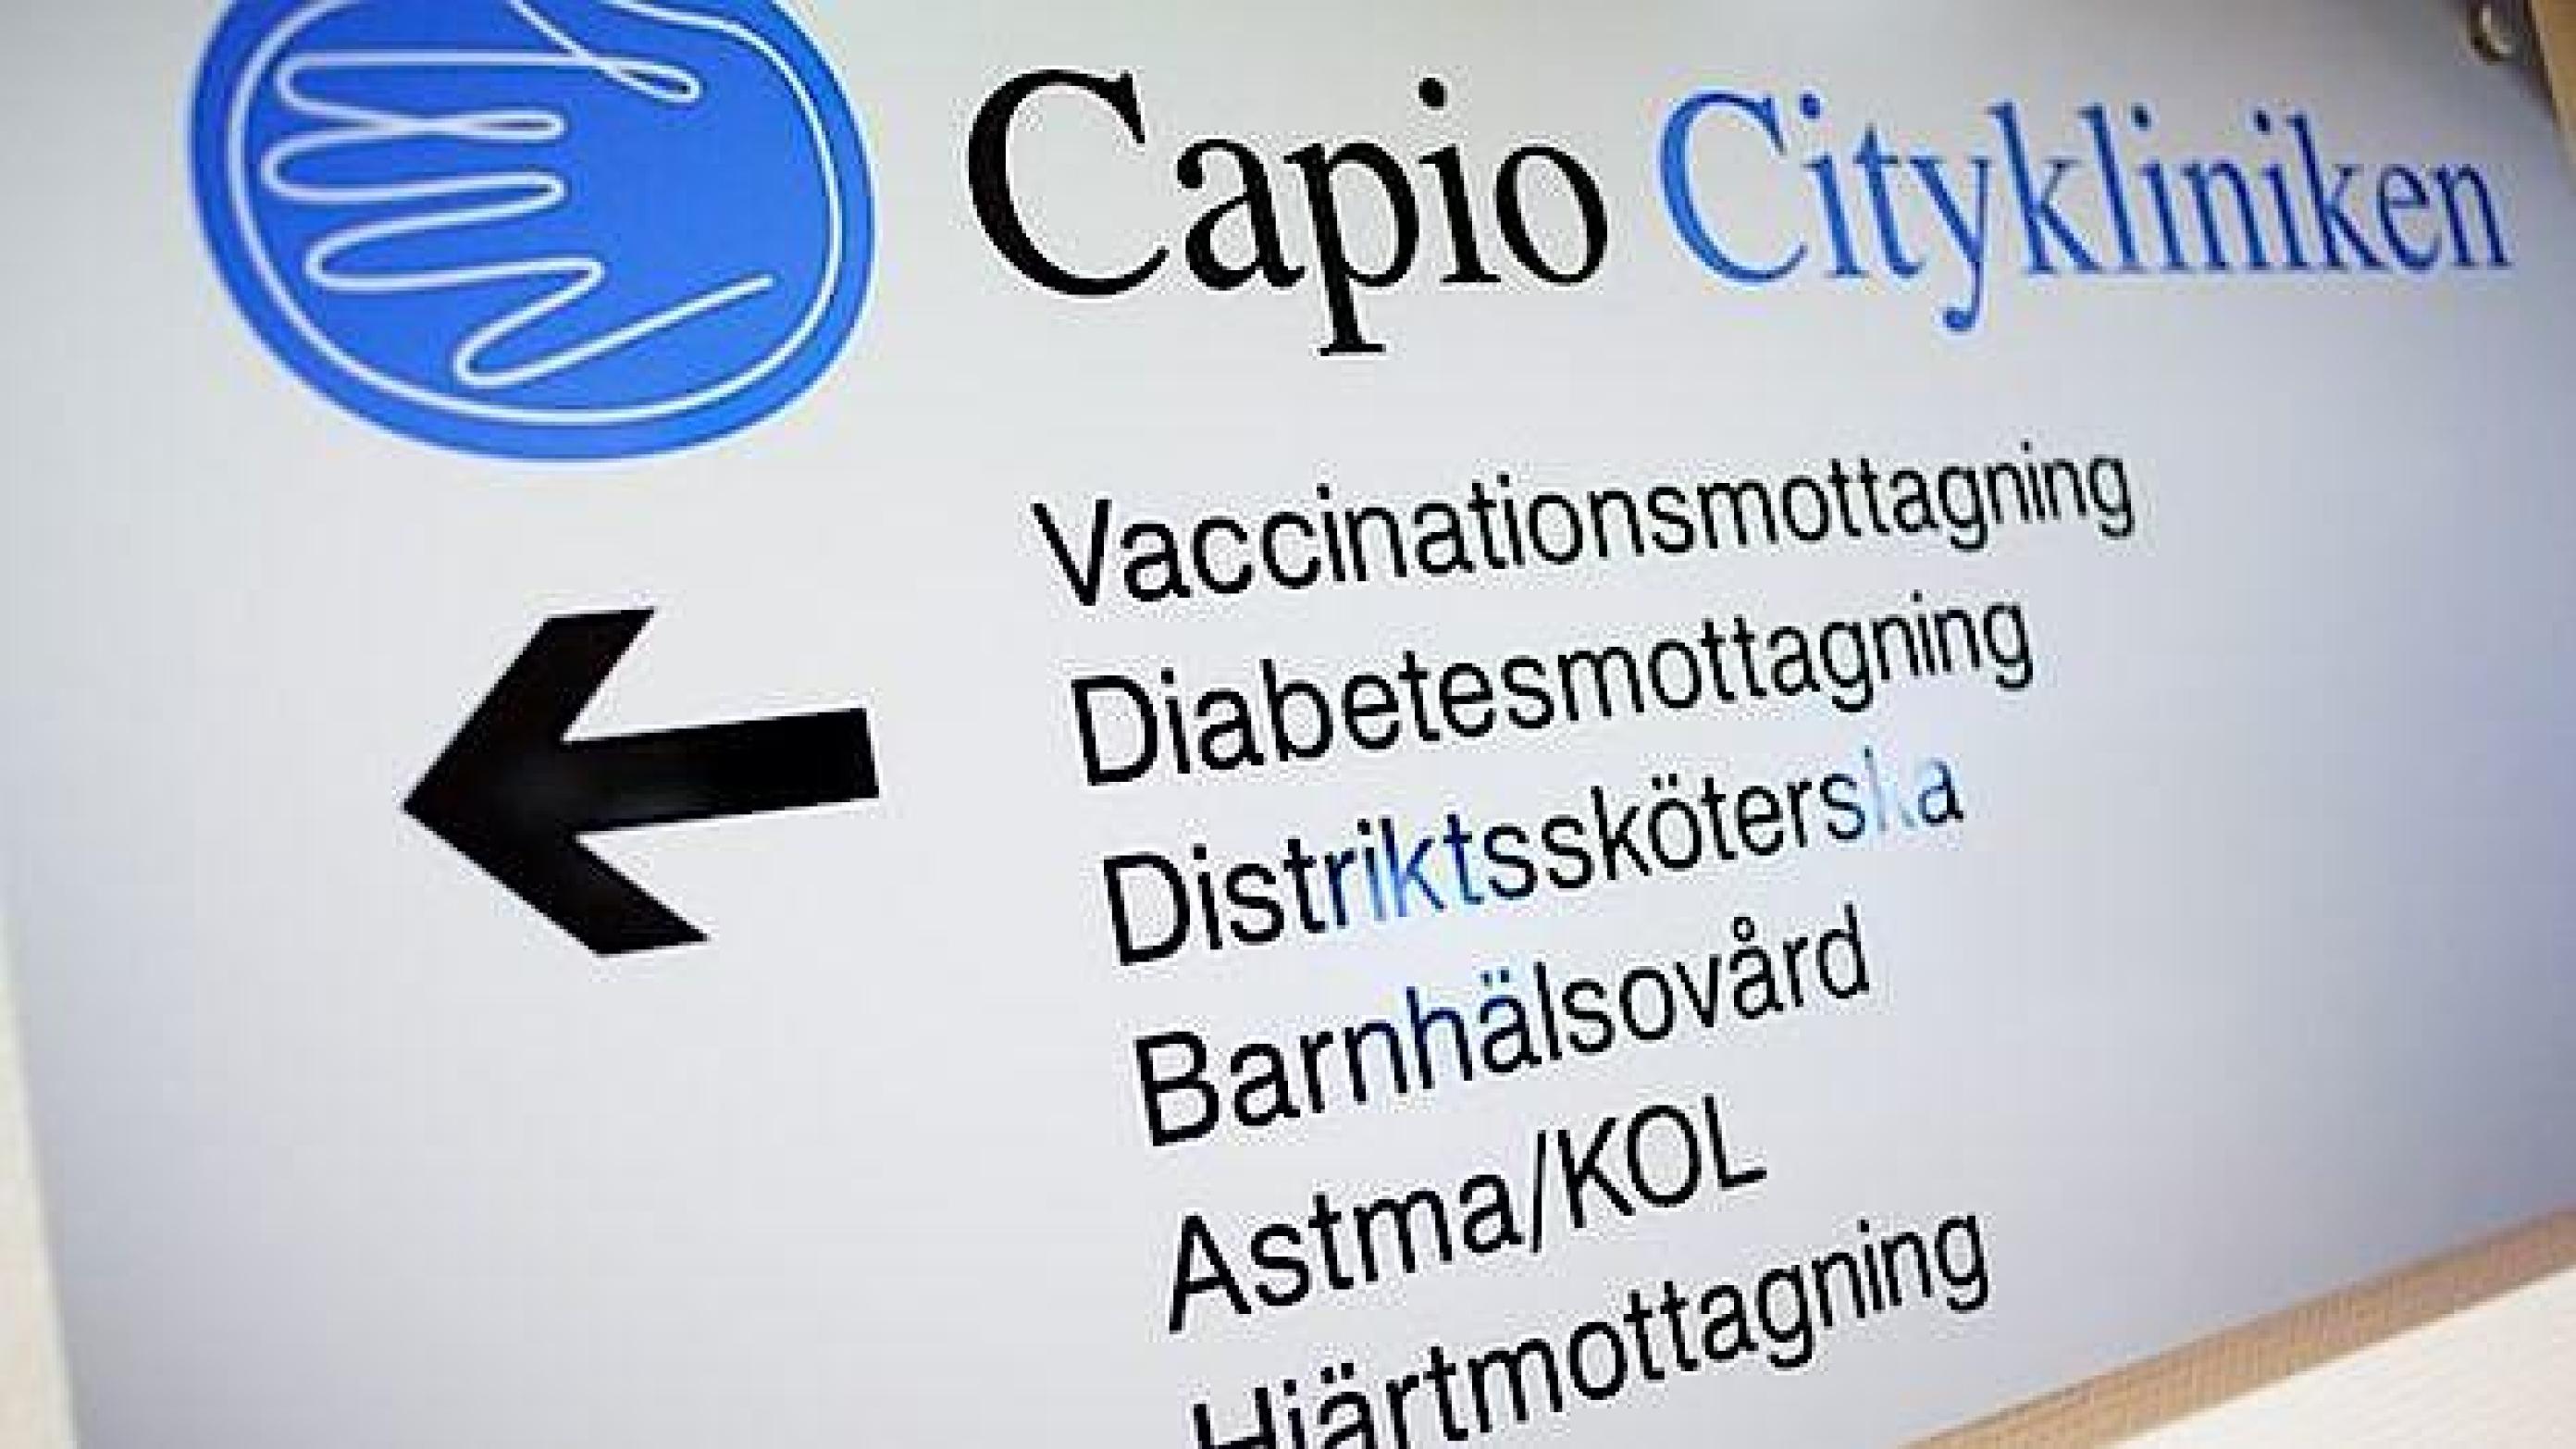 Capio er en af Sveriges store private sundhedsvirksomheder. Foto: Capio Group.